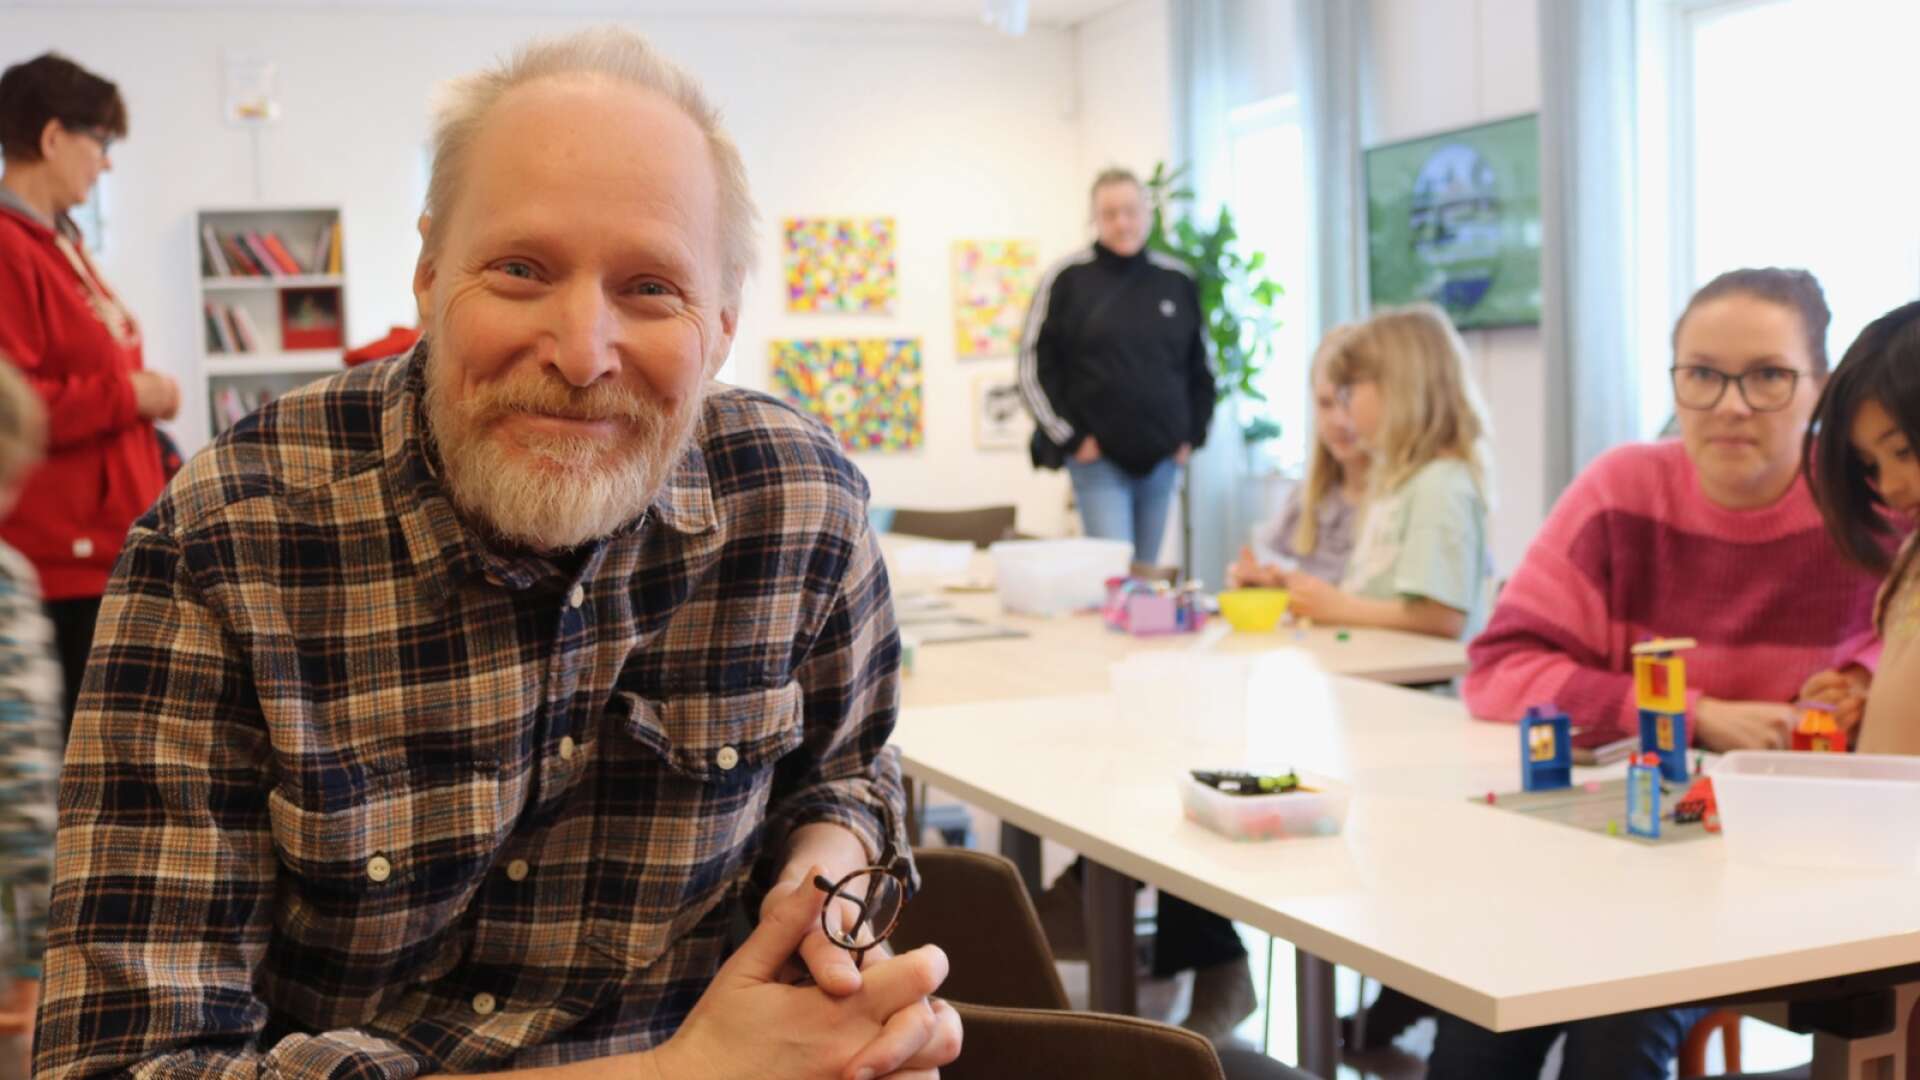 Gunnar Källström ska enbart fokusera på det han tycker är roligt, som att skriva visor anordna visfestival och skriva böcker.